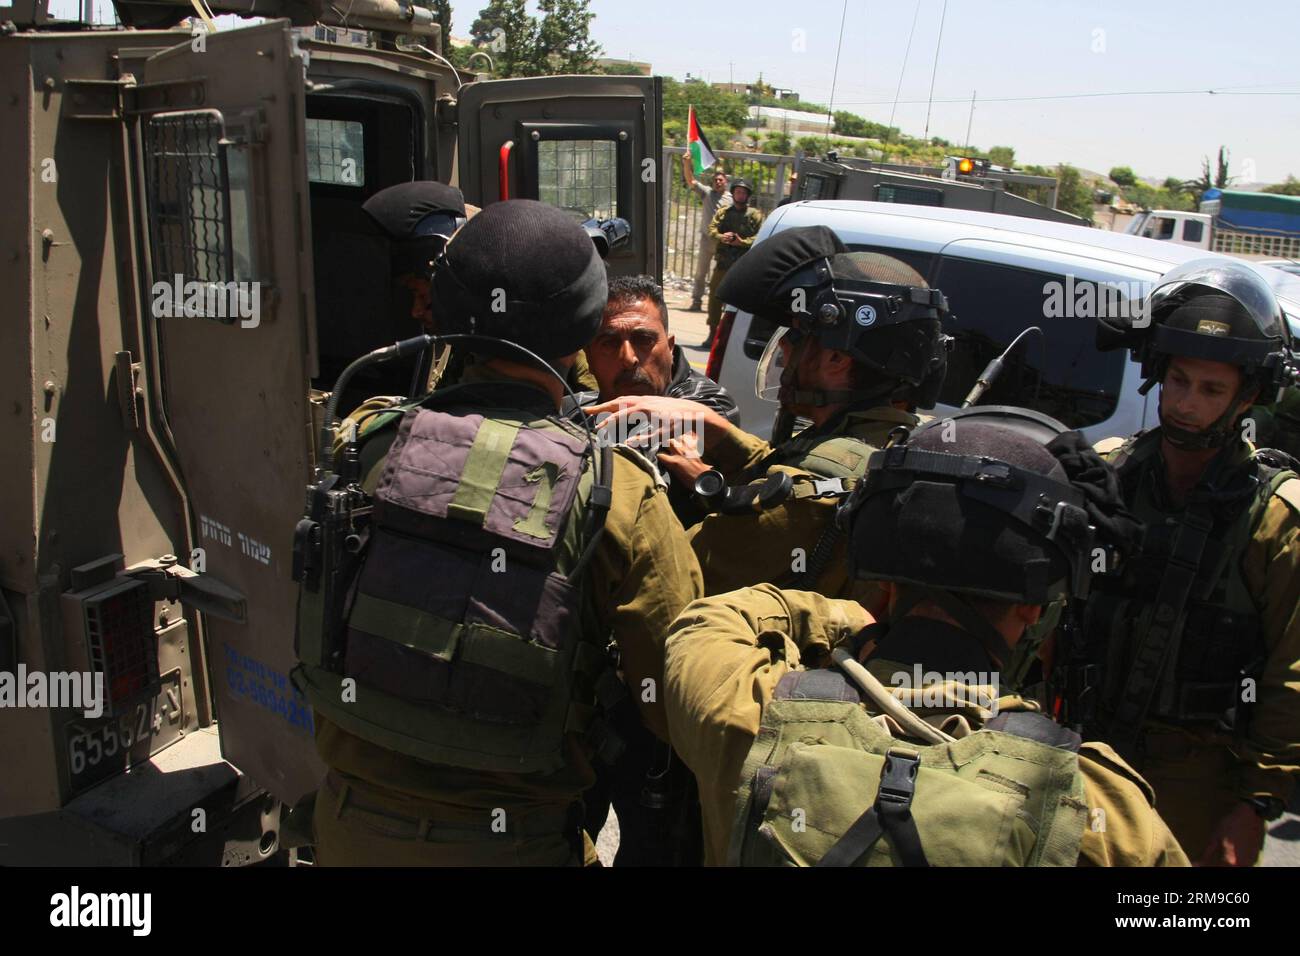 (140517) - Hébron, 17 mai 2014 (Xinhua) - les forces de sécurité israéliennes arrêtent un palestinien près d'une rue principale entre Hébron et Jérusalem, lors d'une manifestation marquant le 66e anniversaire de la Nakba dans la ville d'Hébron en Cisjordanie, le 17 mai 2014. (Xinhua/Mamoun Wazwaz) MIDEAST-HEBRON-AFFRONTEMENTS PUBLICATIONxNOTxINxCHN Hebron Mai 17 2014 XINHUA les forces de sécurité israéliennes arrêtent un PALESTINIEN près d'une rue principale entre Hébron et Jérusalem lors d'une manifestation marquant l'anniversaire de Nakba dans la ville de CISJORDANIE d'Hébron le 17 2014 mai XINHUA Mamoun Wazwaz Mideast Hebron affrontements PUBLICategays PUBLICY Banque D'Images